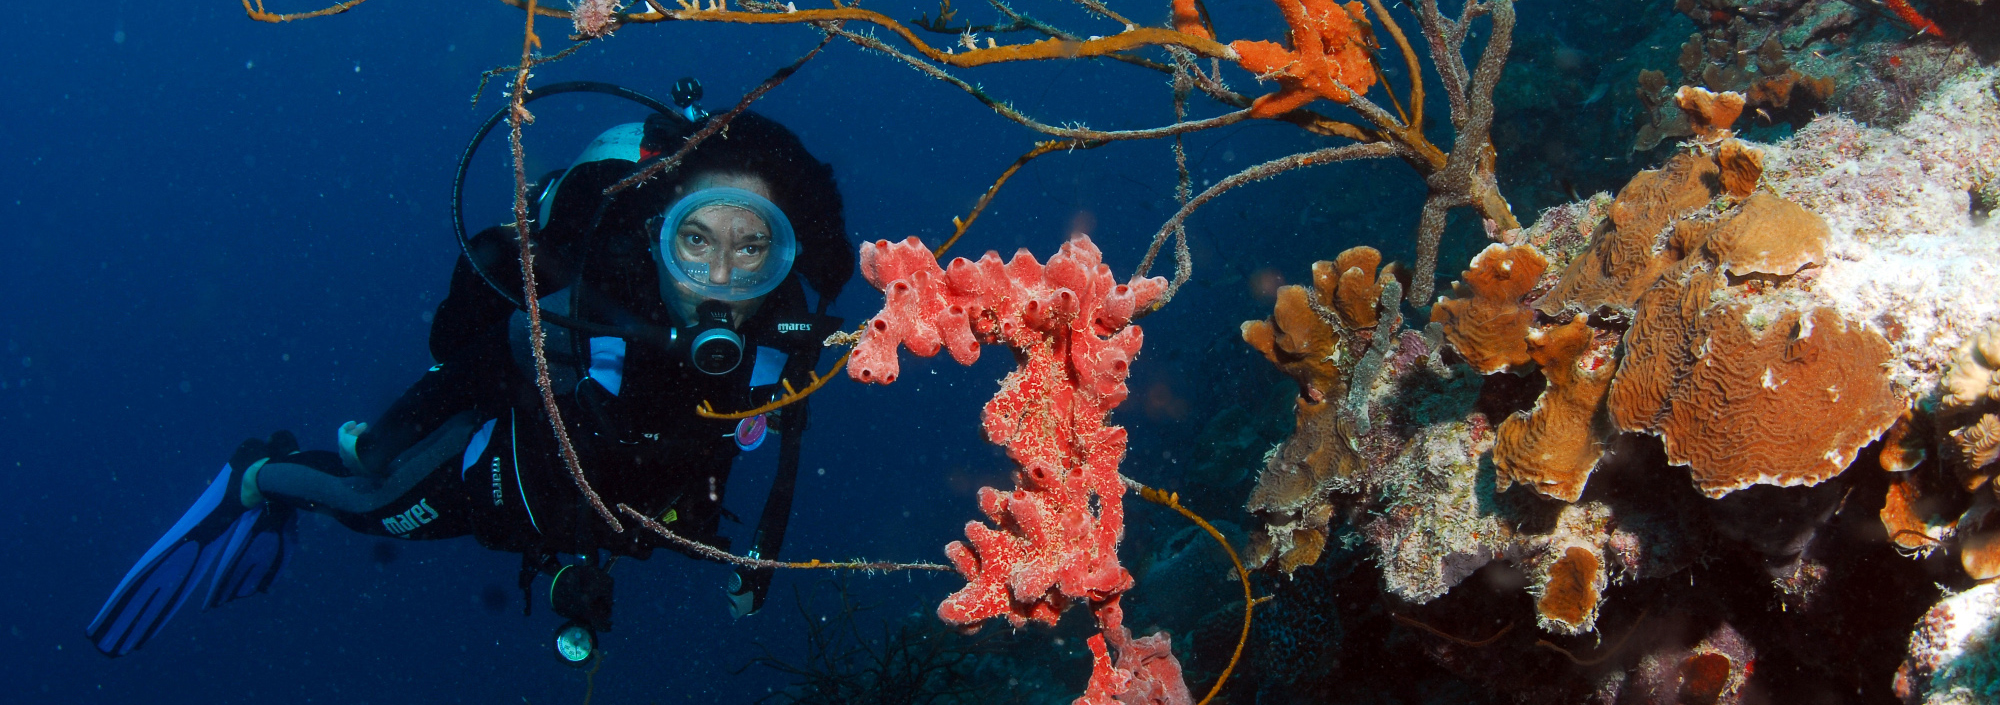 Taucher unter Wasser mit bunten Korallen